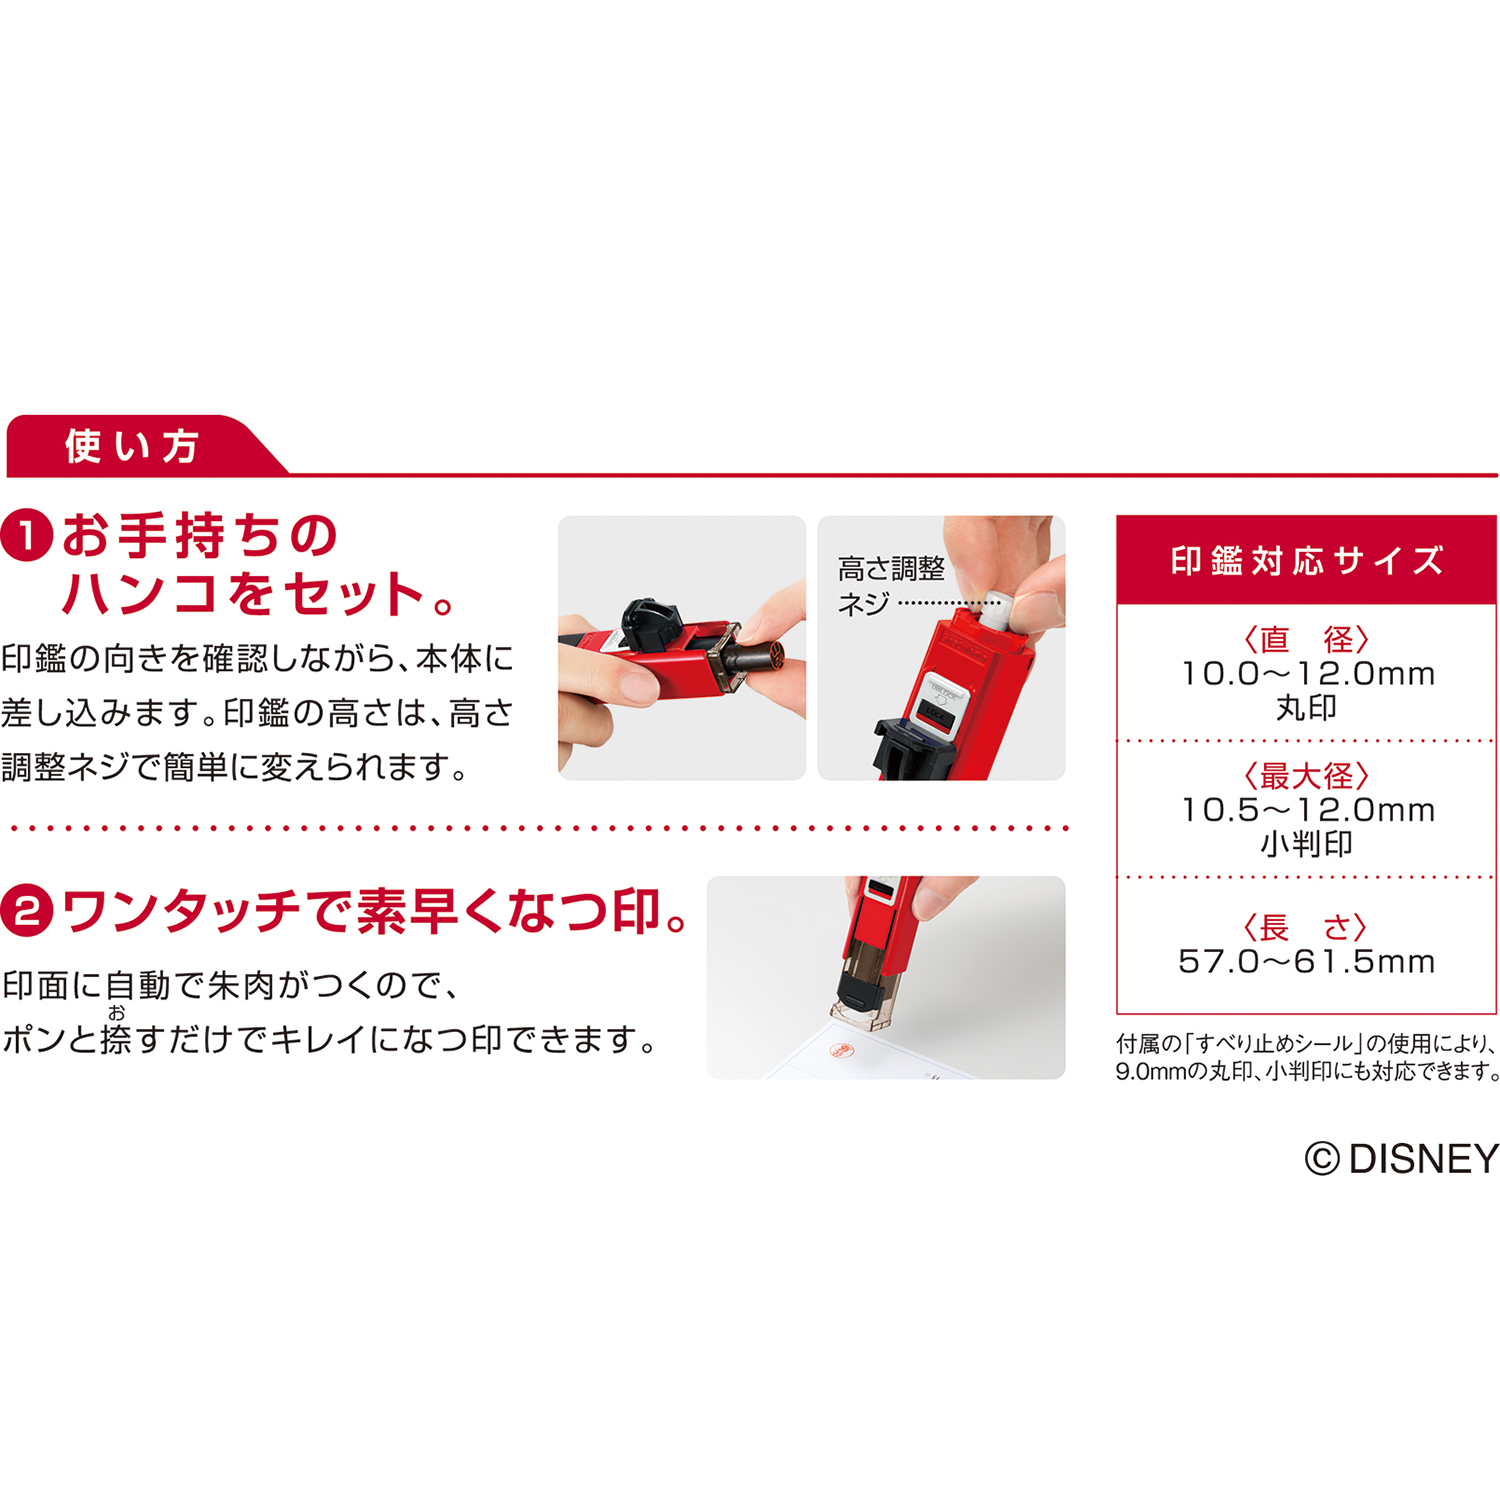 ハンコ・ベンリＮ ミニーマウス|CPHN-DN|商品カタログ|シヤチハタ株式会社